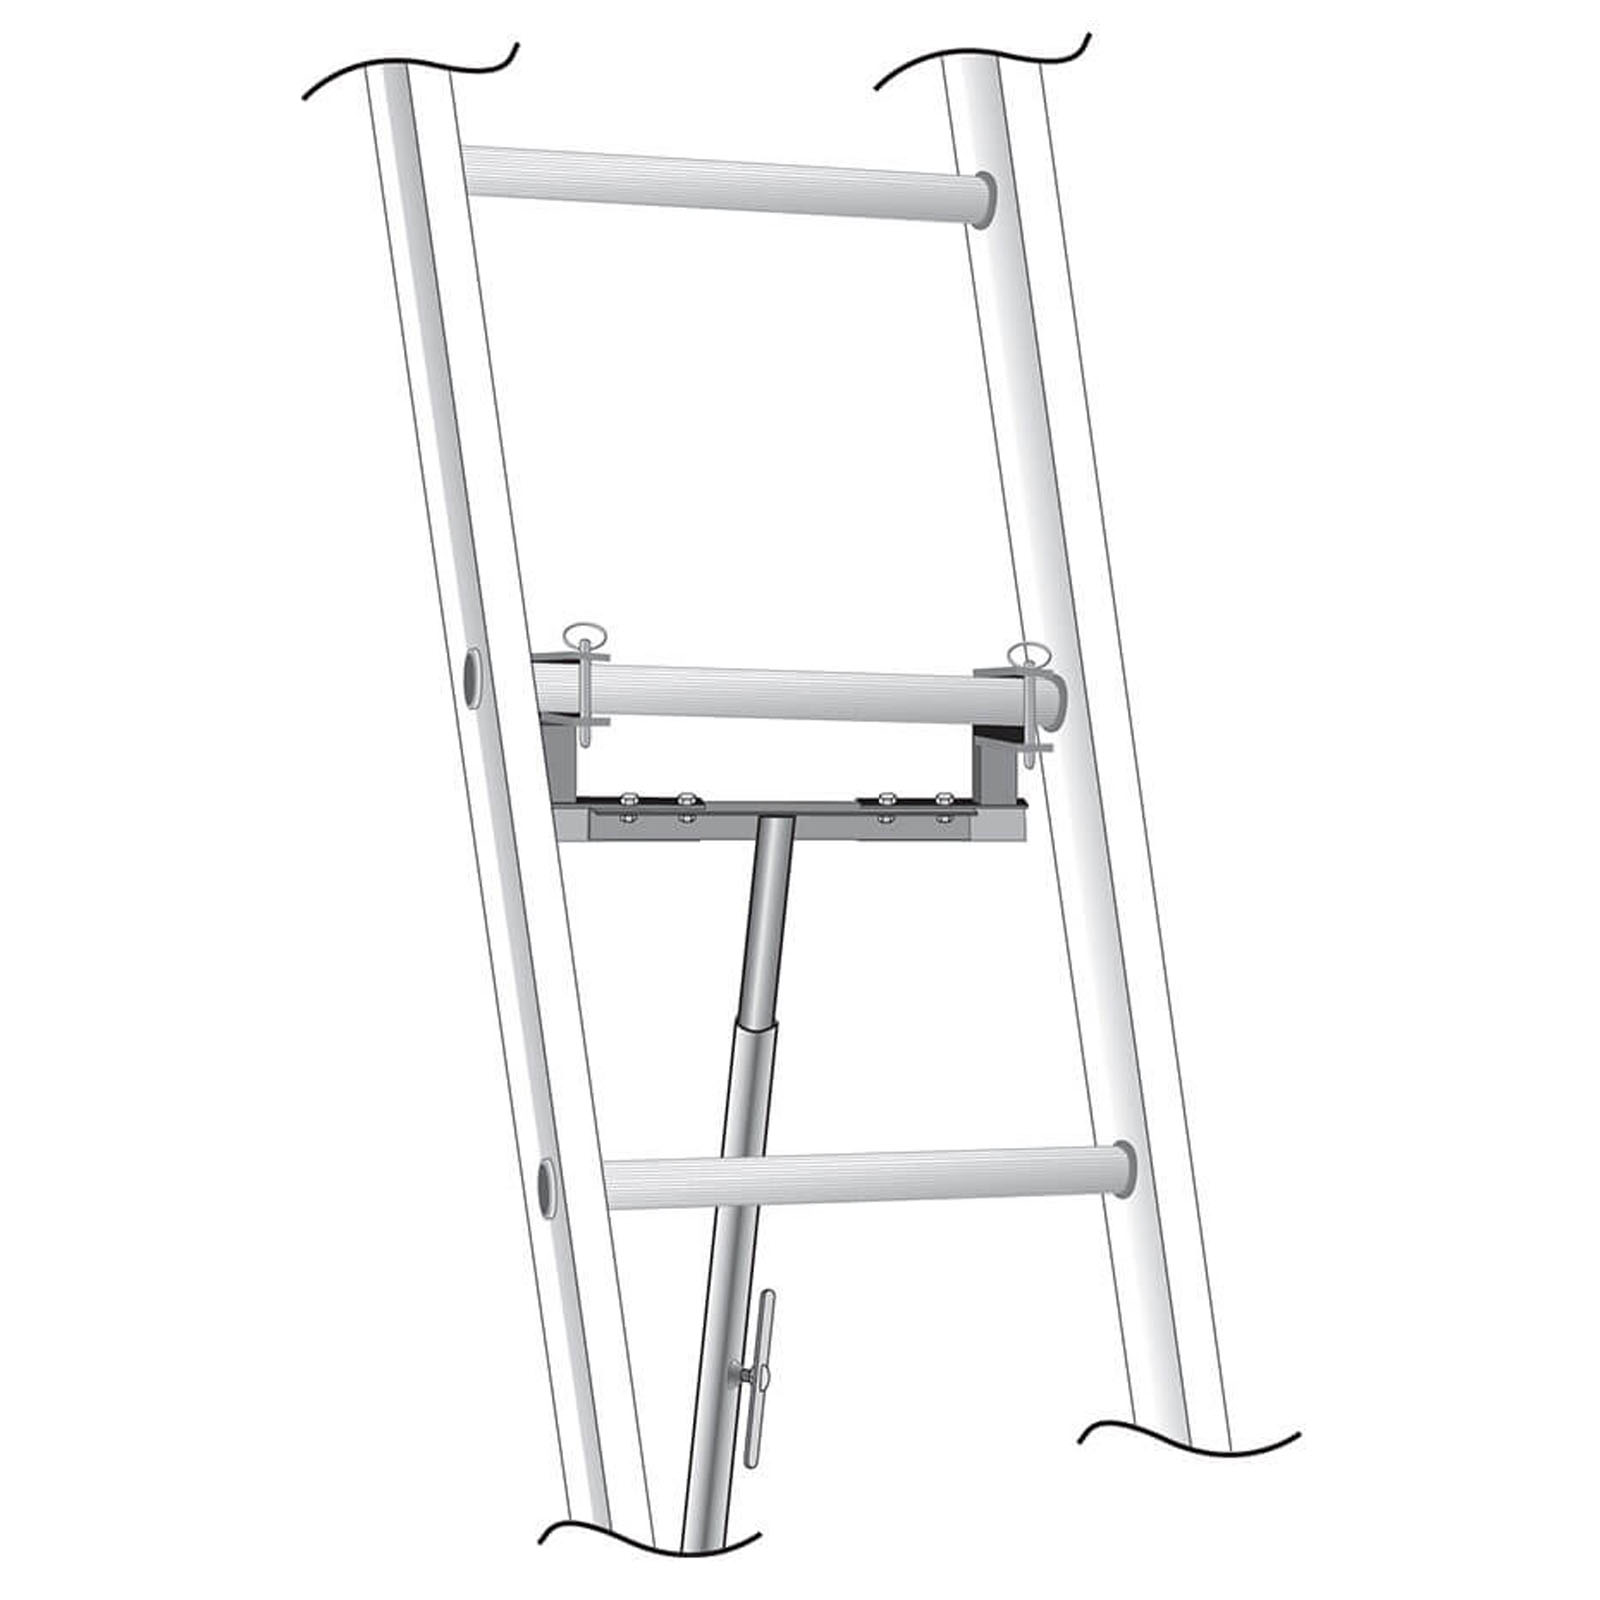 Ladder Hoist Accessories